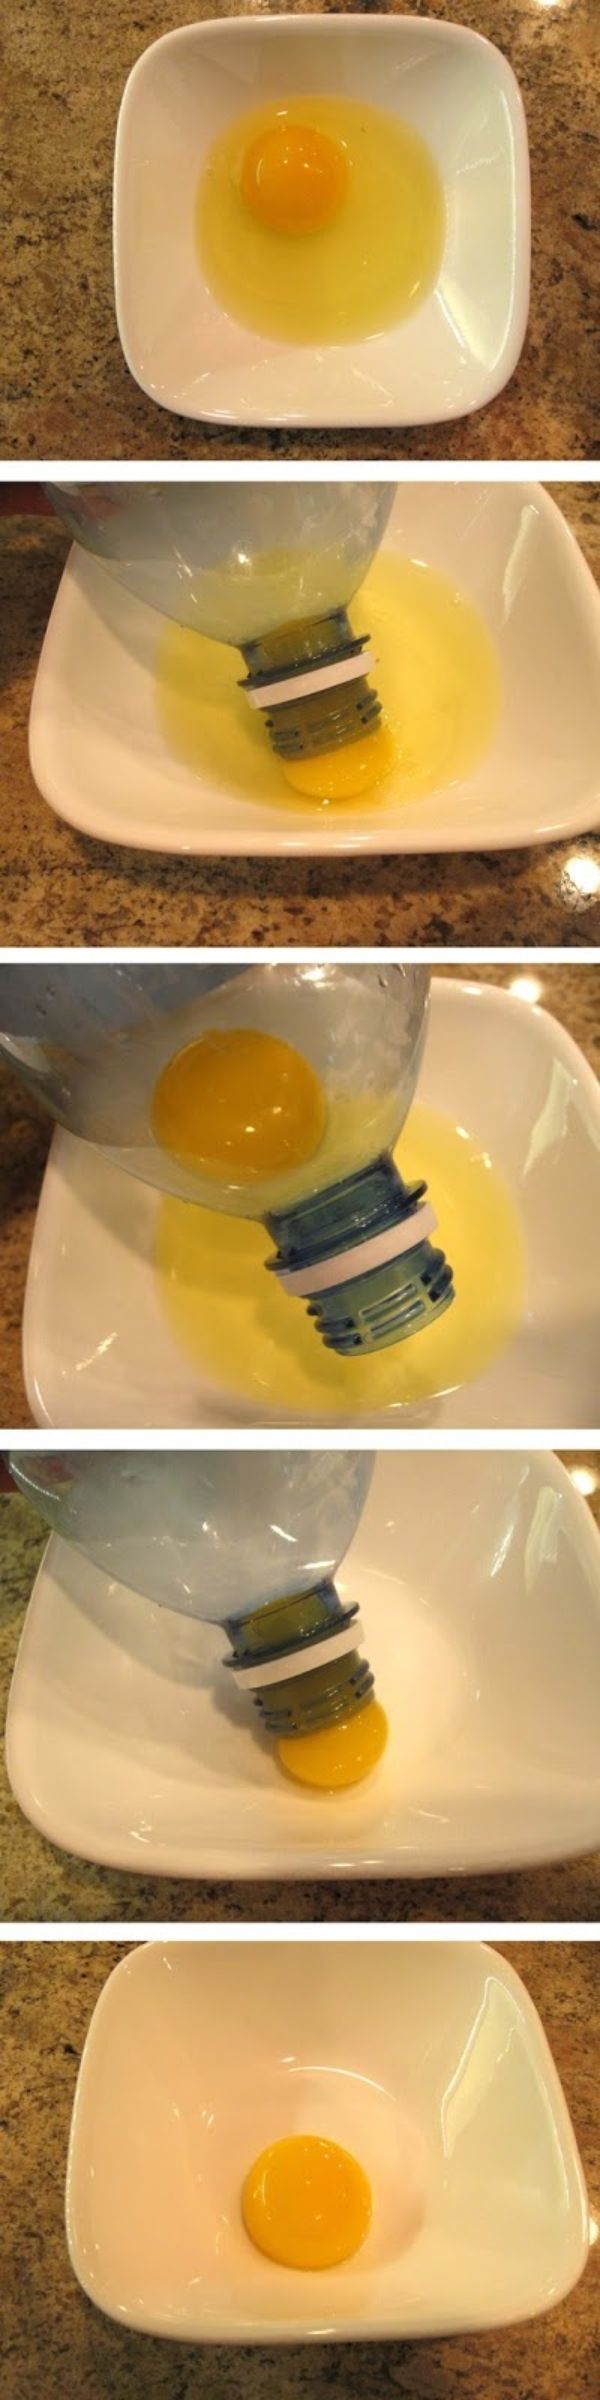 جدا کردن زرده و سفیده تخم مرغ با استفاده از بطری